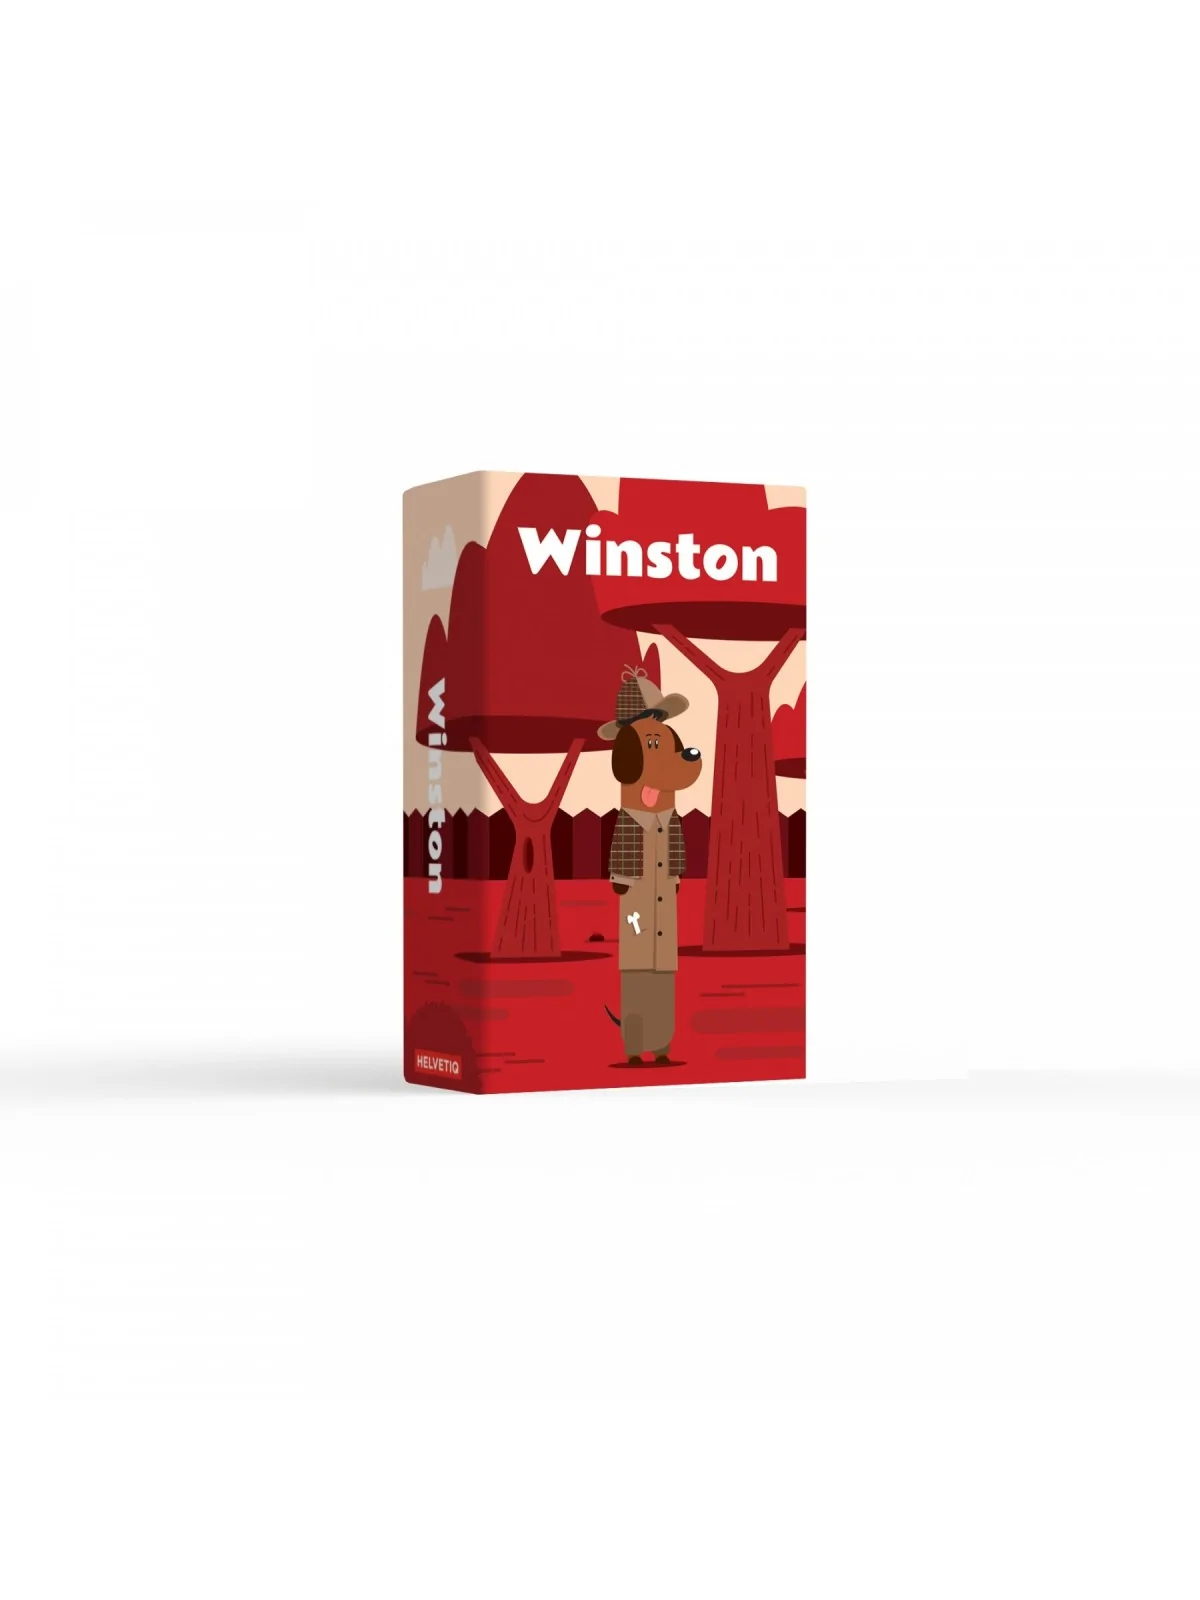 Comprar Winston barato al mejor precio 11,65 € de Gen X Games